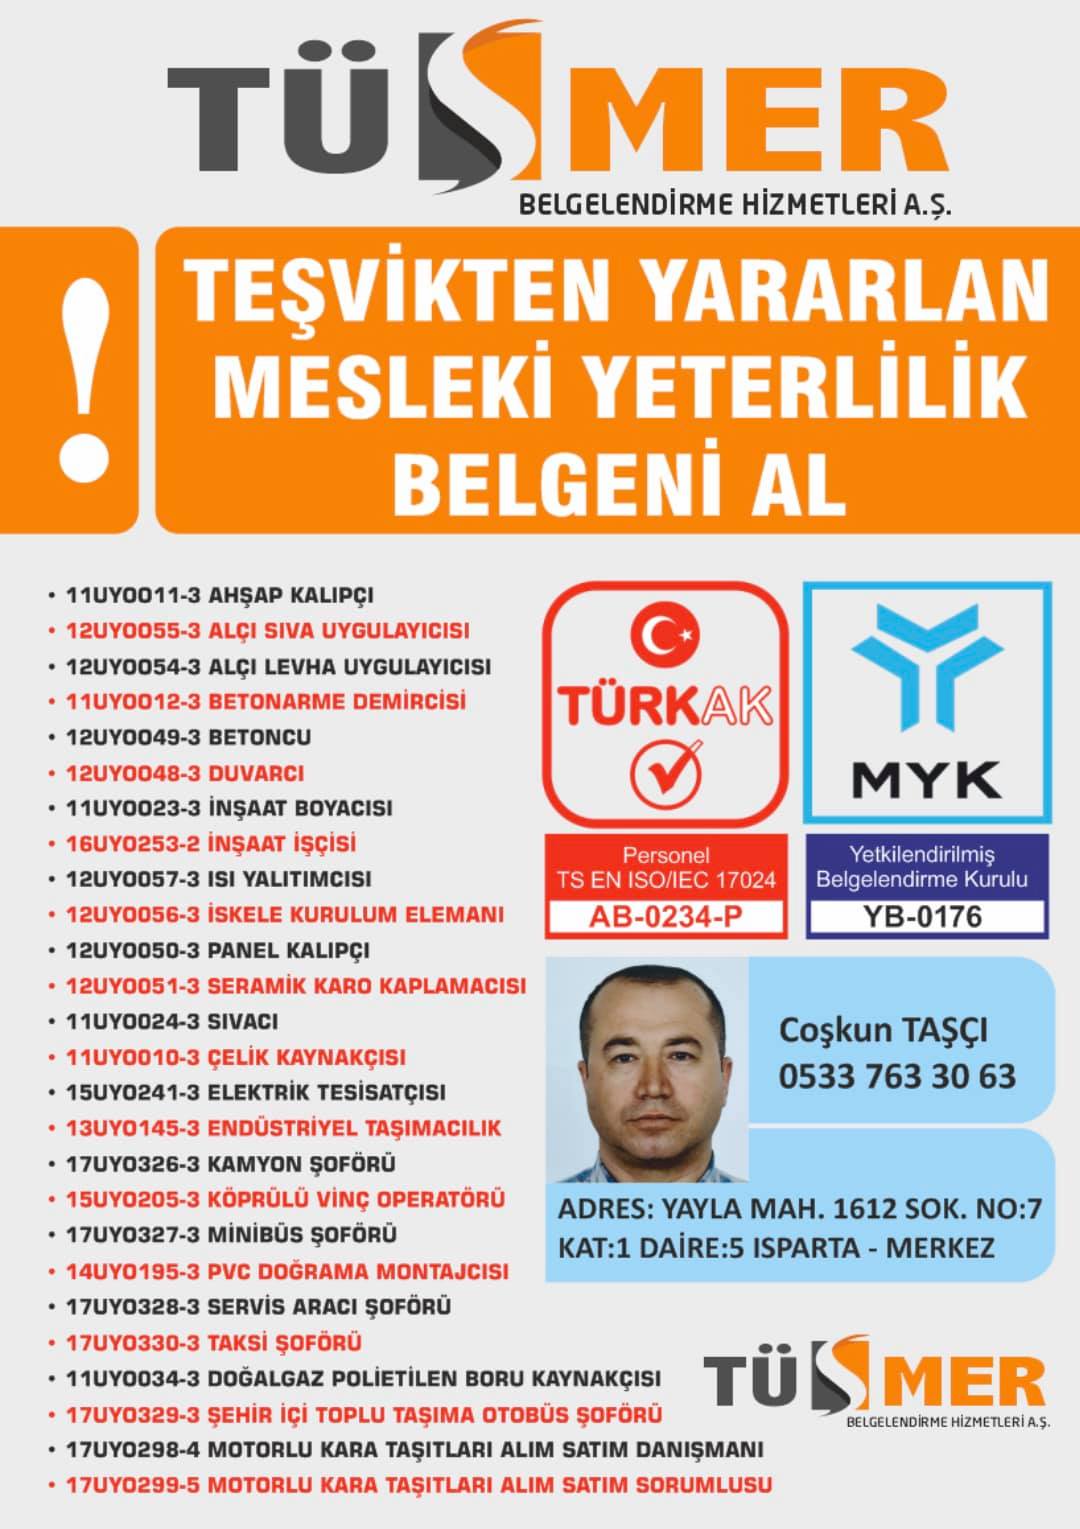 MYK MESLEKİ YETERLİLİK BELGESİ Feyzullah Maltepe İstanbul